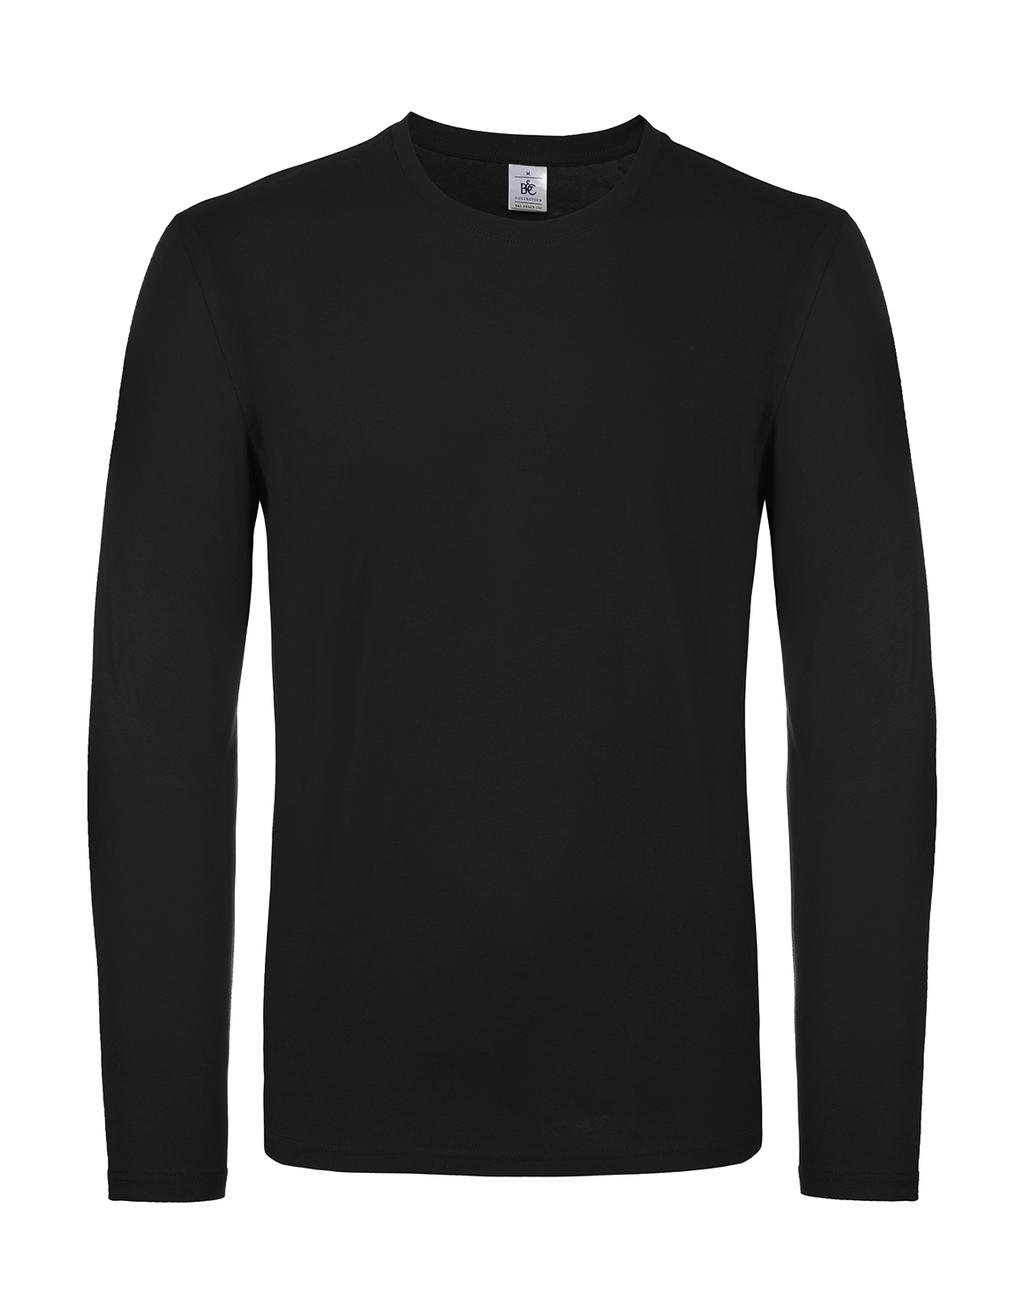 Tričko s dlhými rukávmi #E150 - black